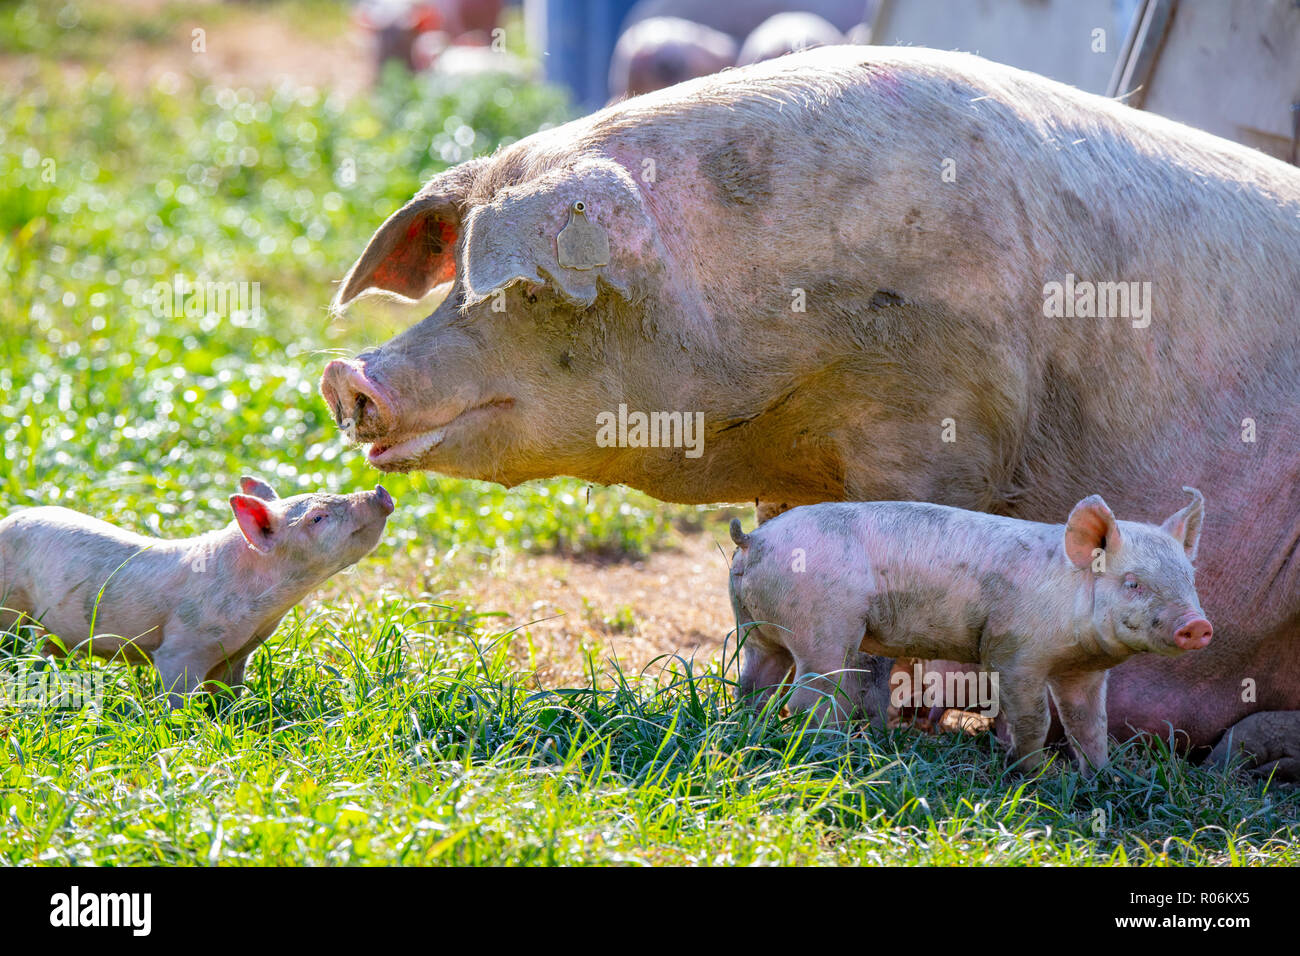 Un bébé porcinet ressemble à sa maman truie pour le confort sur une variété de cochons en Nouvelle Zélande Banque D'Images